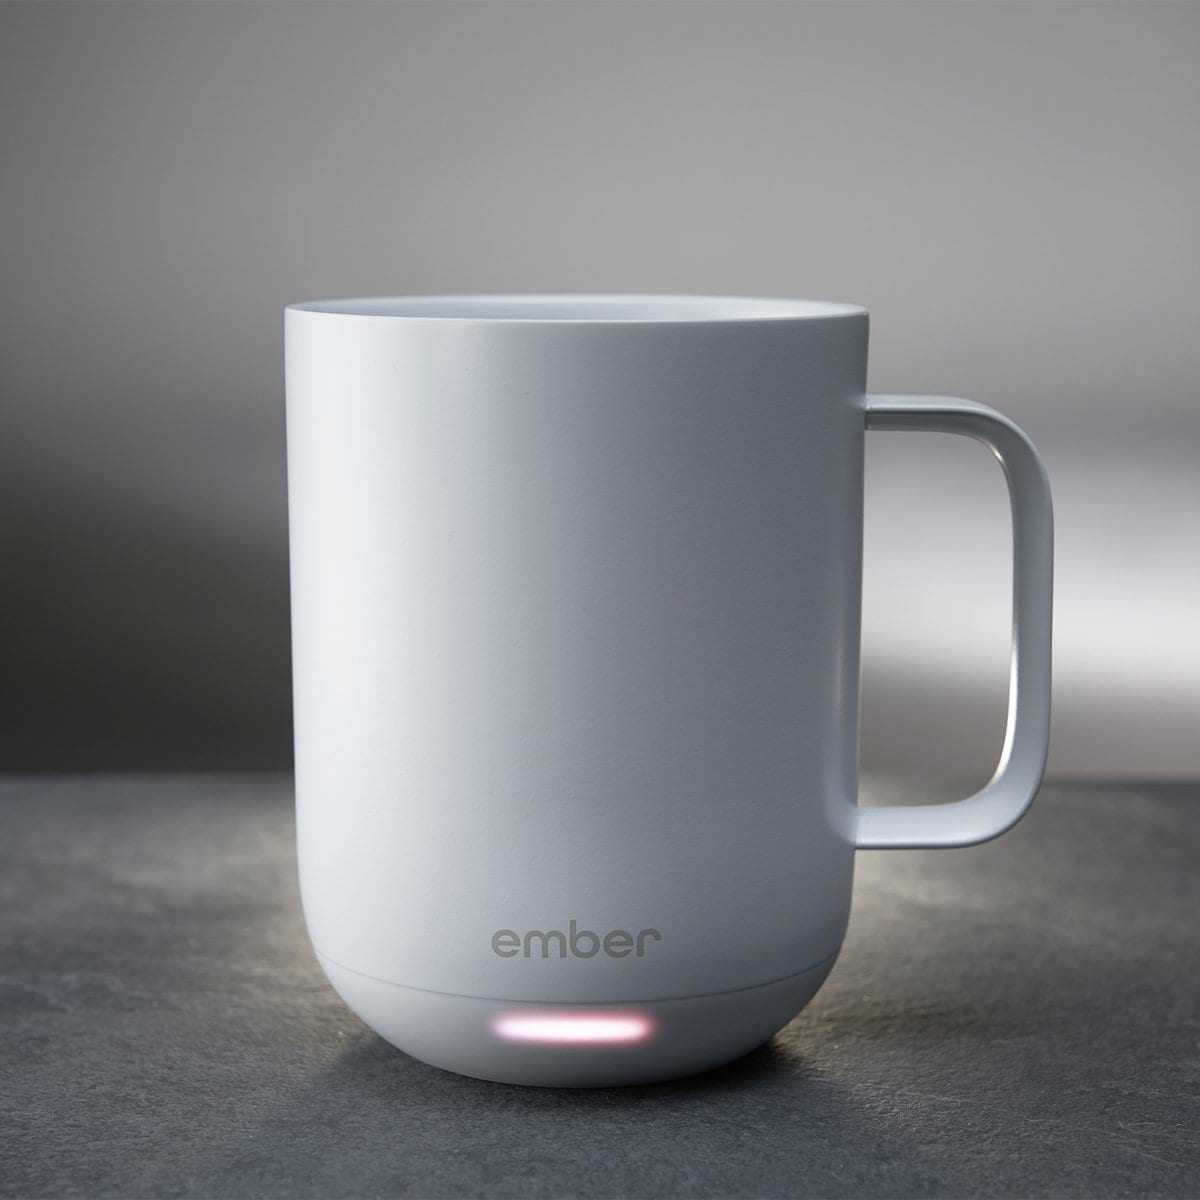 Ember Smart Ceramic Mug